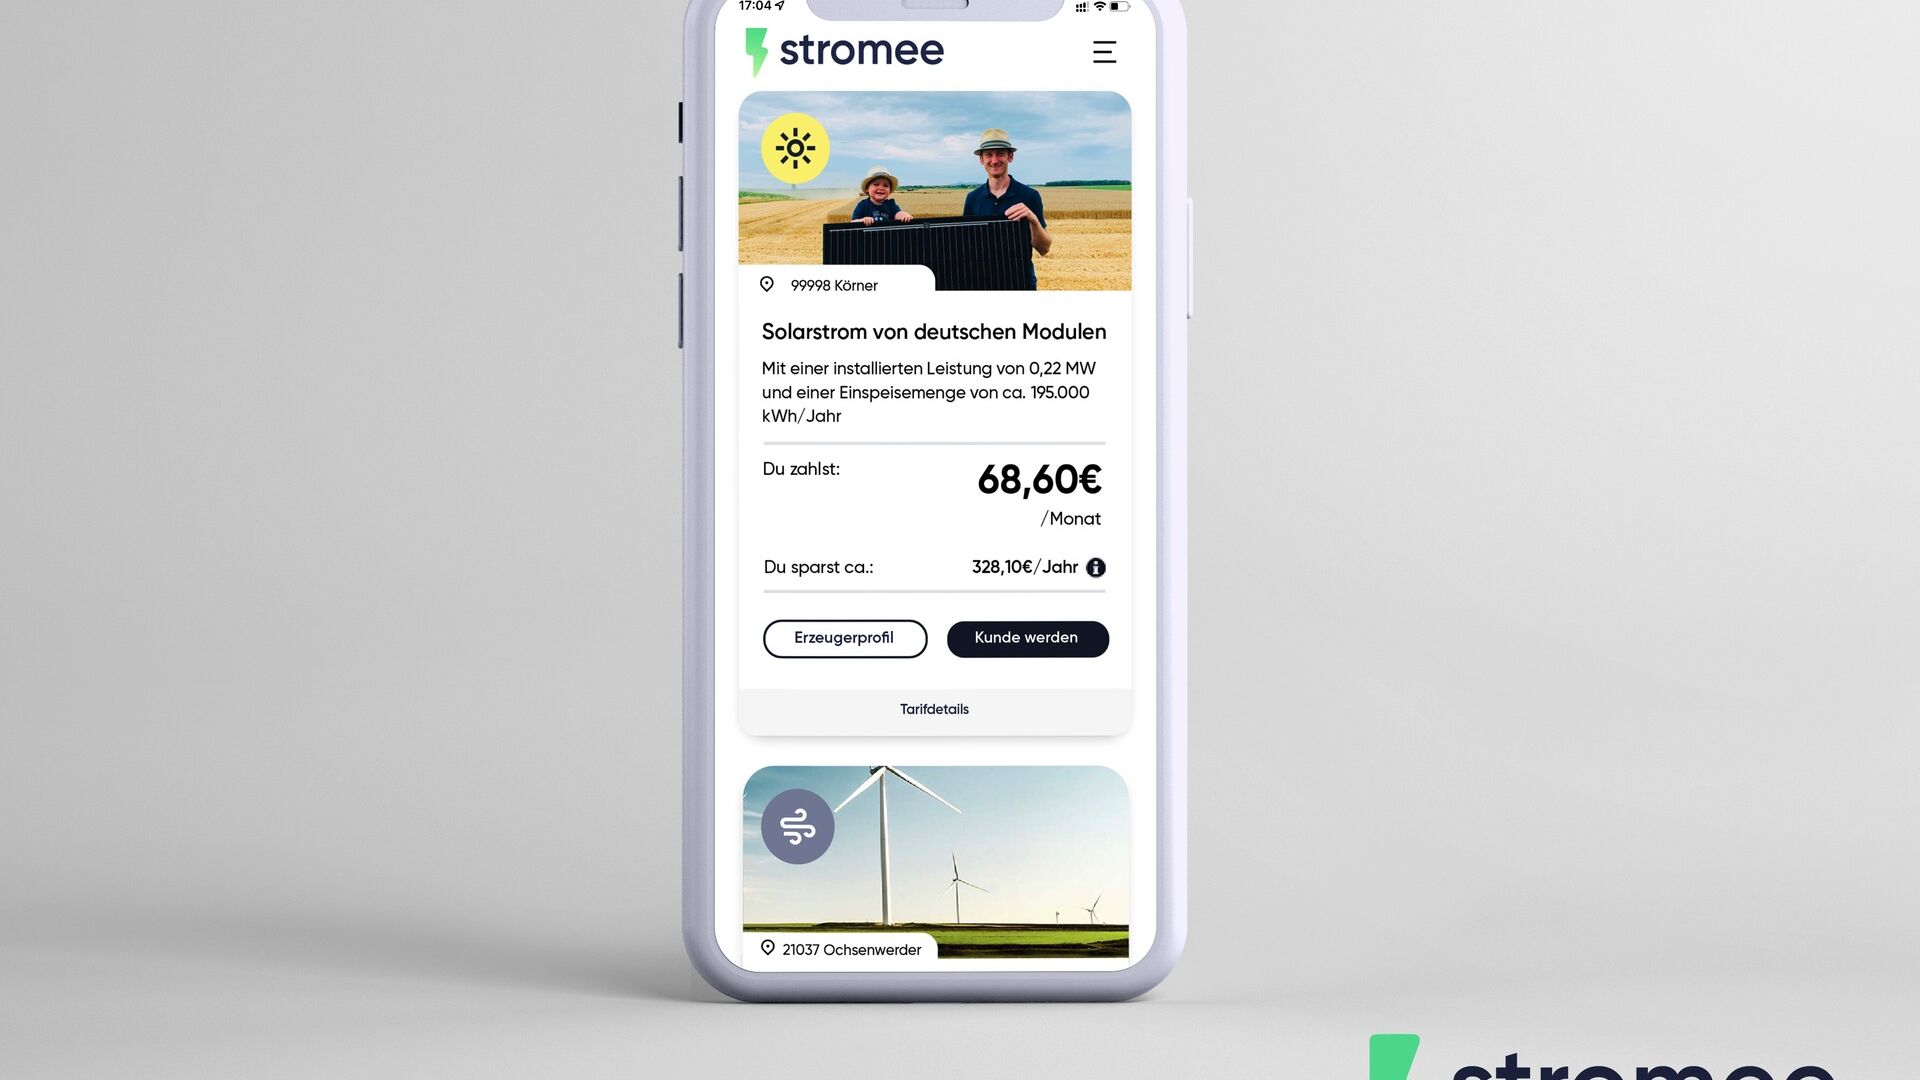 Germania: la App dell’azienda stromee su uno smartphone